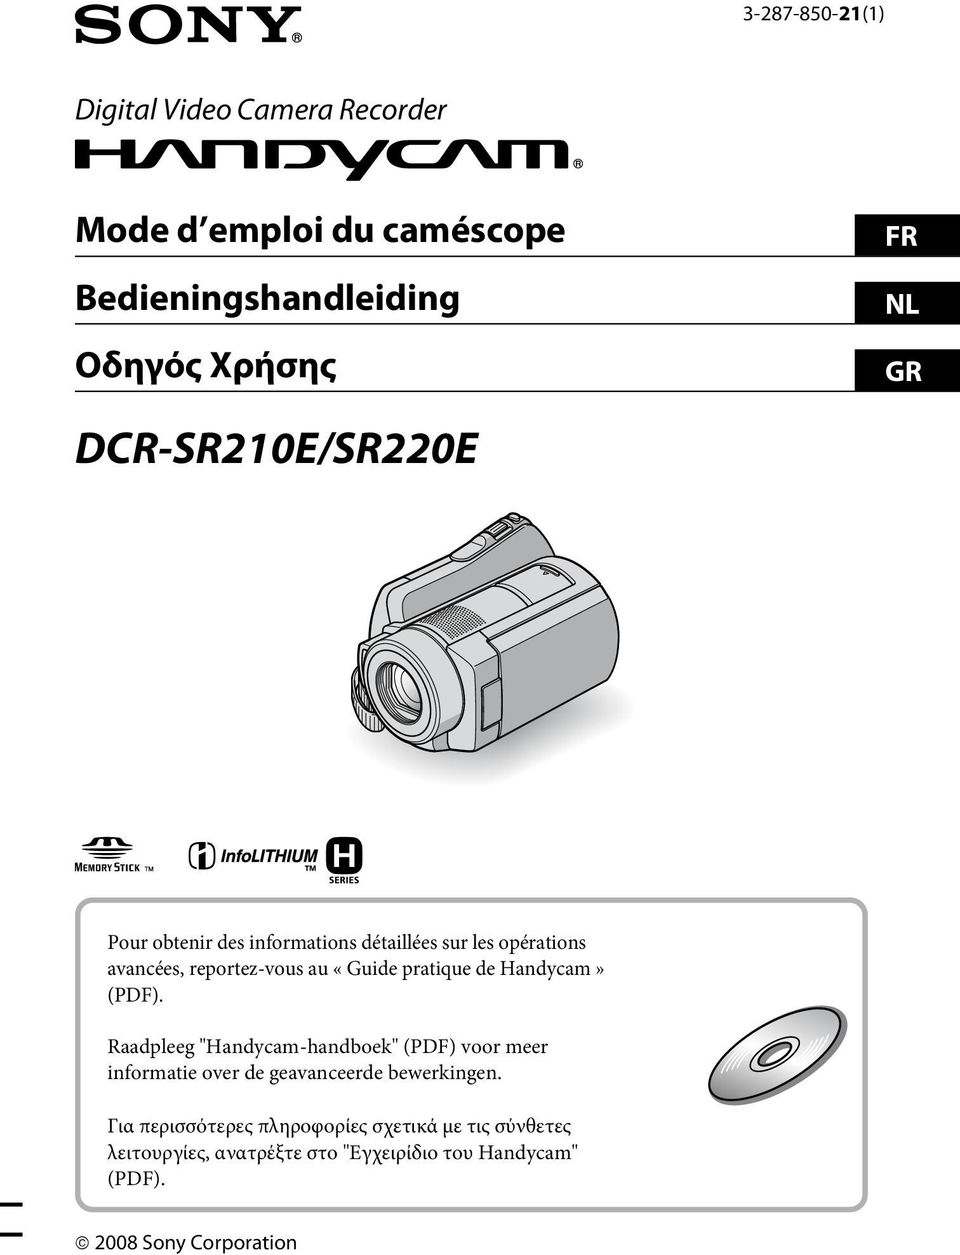 de Handycam» (PDF). Raadpleeg "Handycam-handboek" (PDF) voor meer informatie over de geavanceerde bewerkingen.